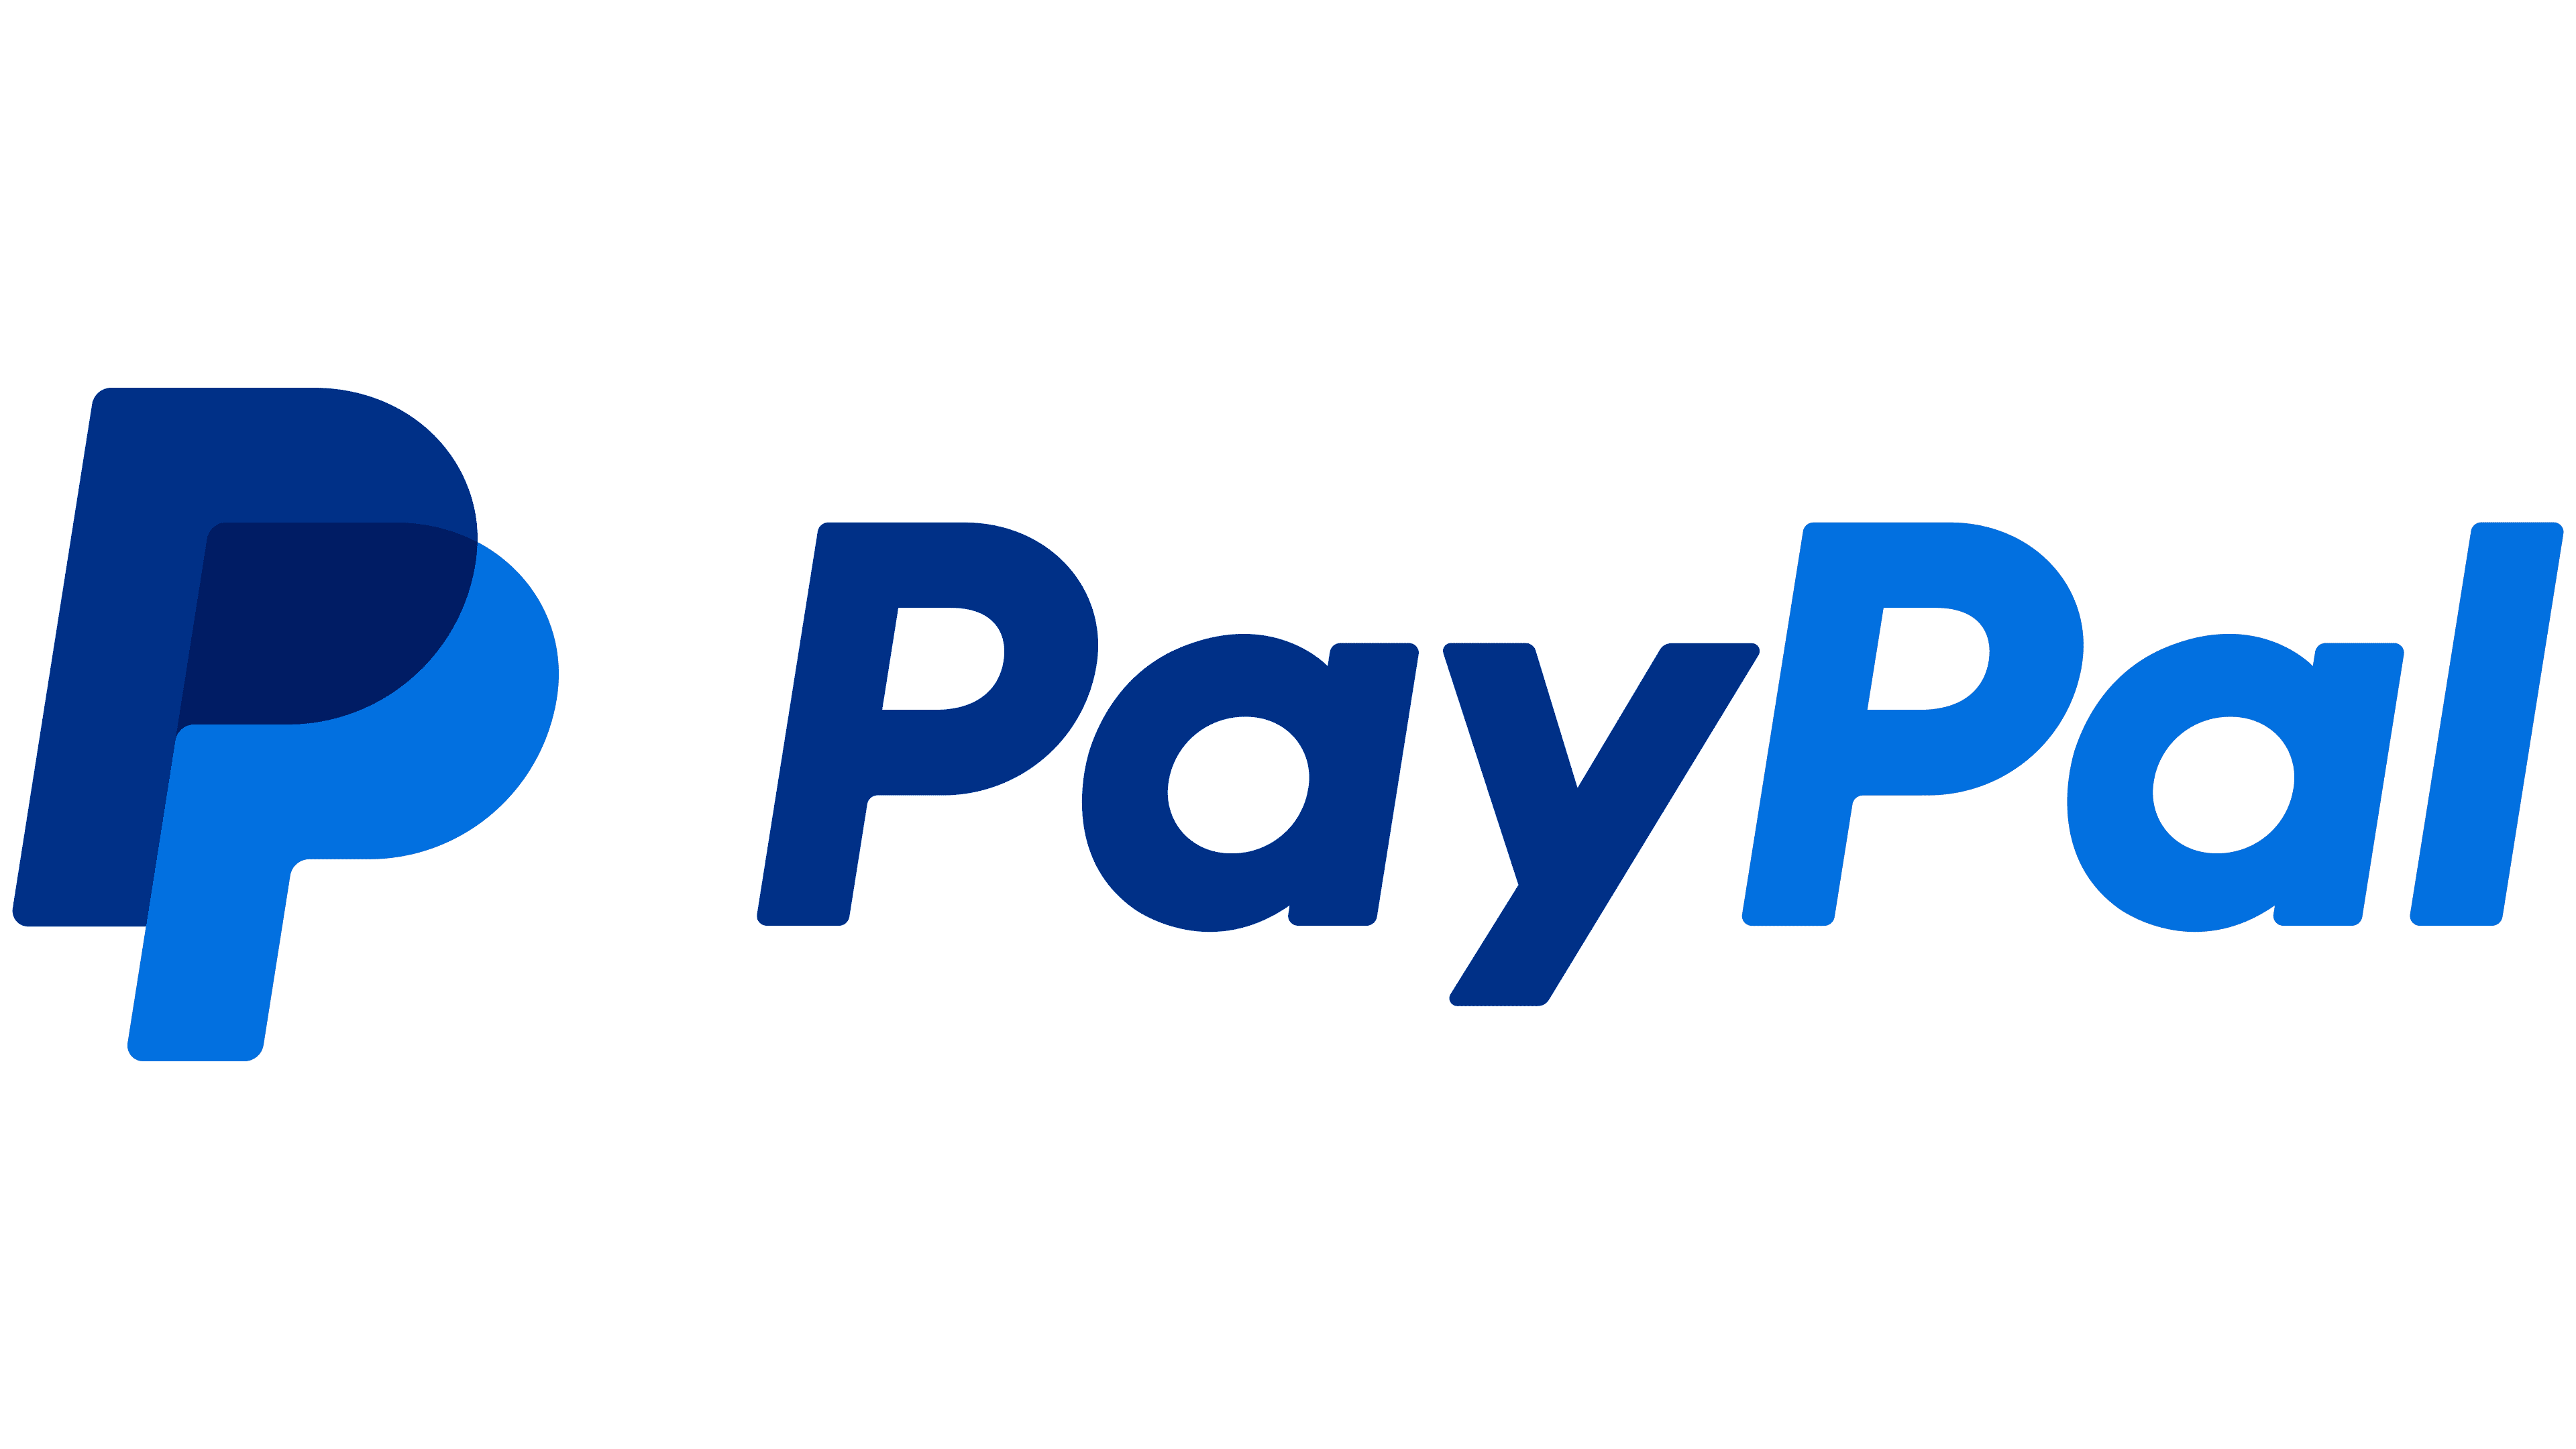 Platební brány Španělsko (PayPal)